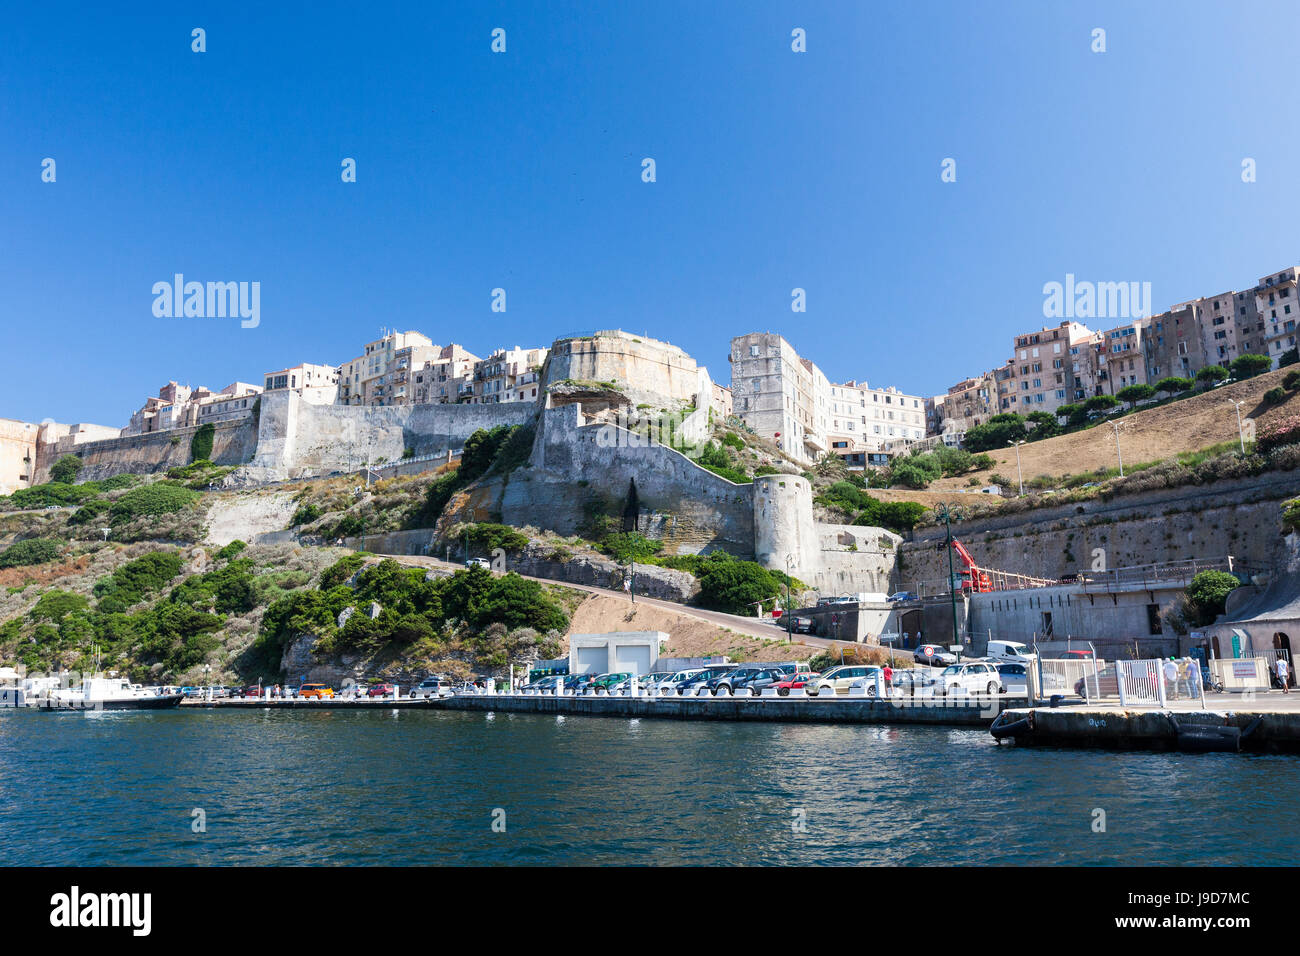 Mare blu inquadra il centro medievale della città vecchia e la fortezza, Bonifacio, Corsica, Francia, Mediterraneo, Europa Foto Stock